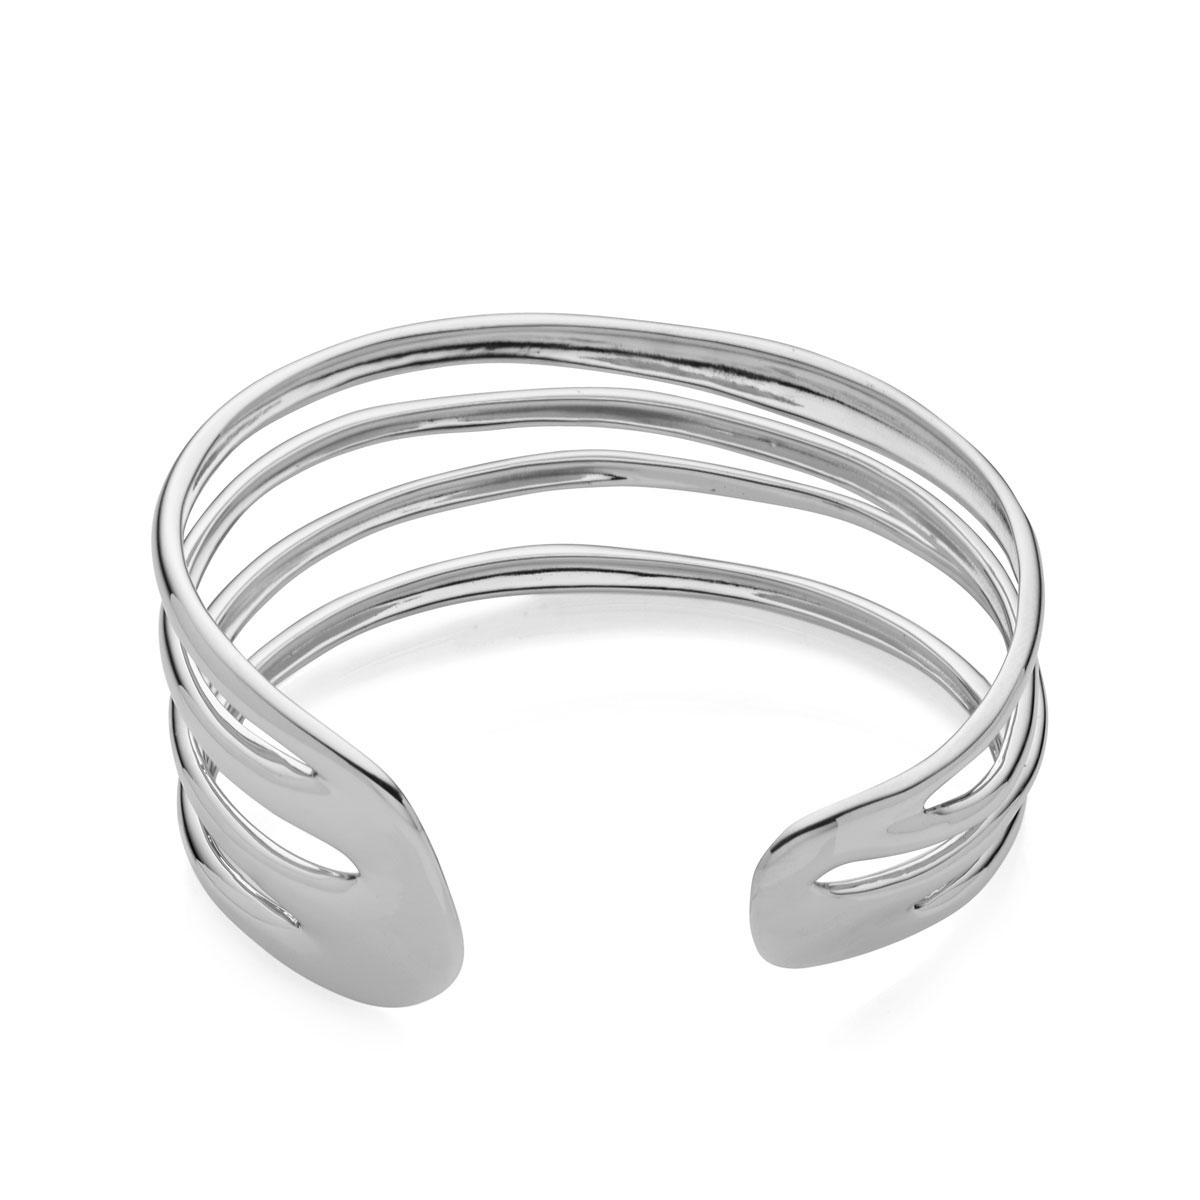 Nambe Jewelry Silver Multi Band Cuff Bracelet, Large